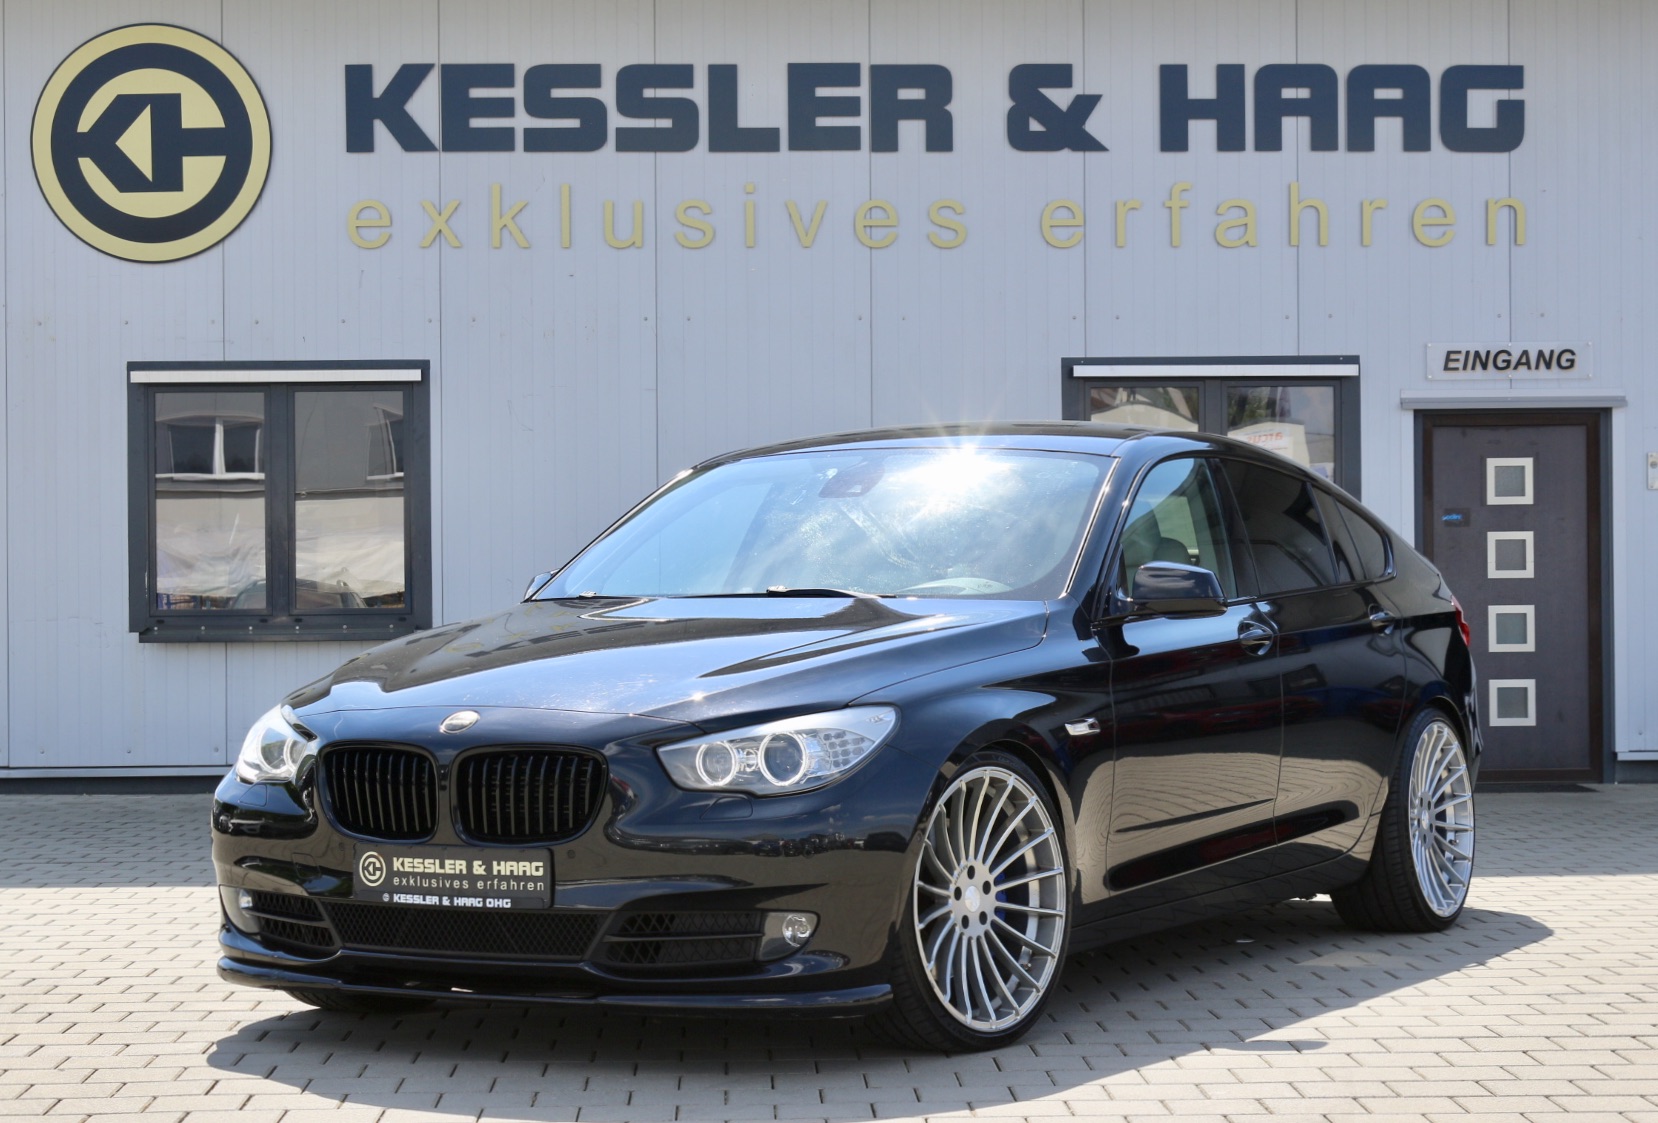 Suchergebnis Auf  Für: BMW ACTIVE TOURER - Car Styling